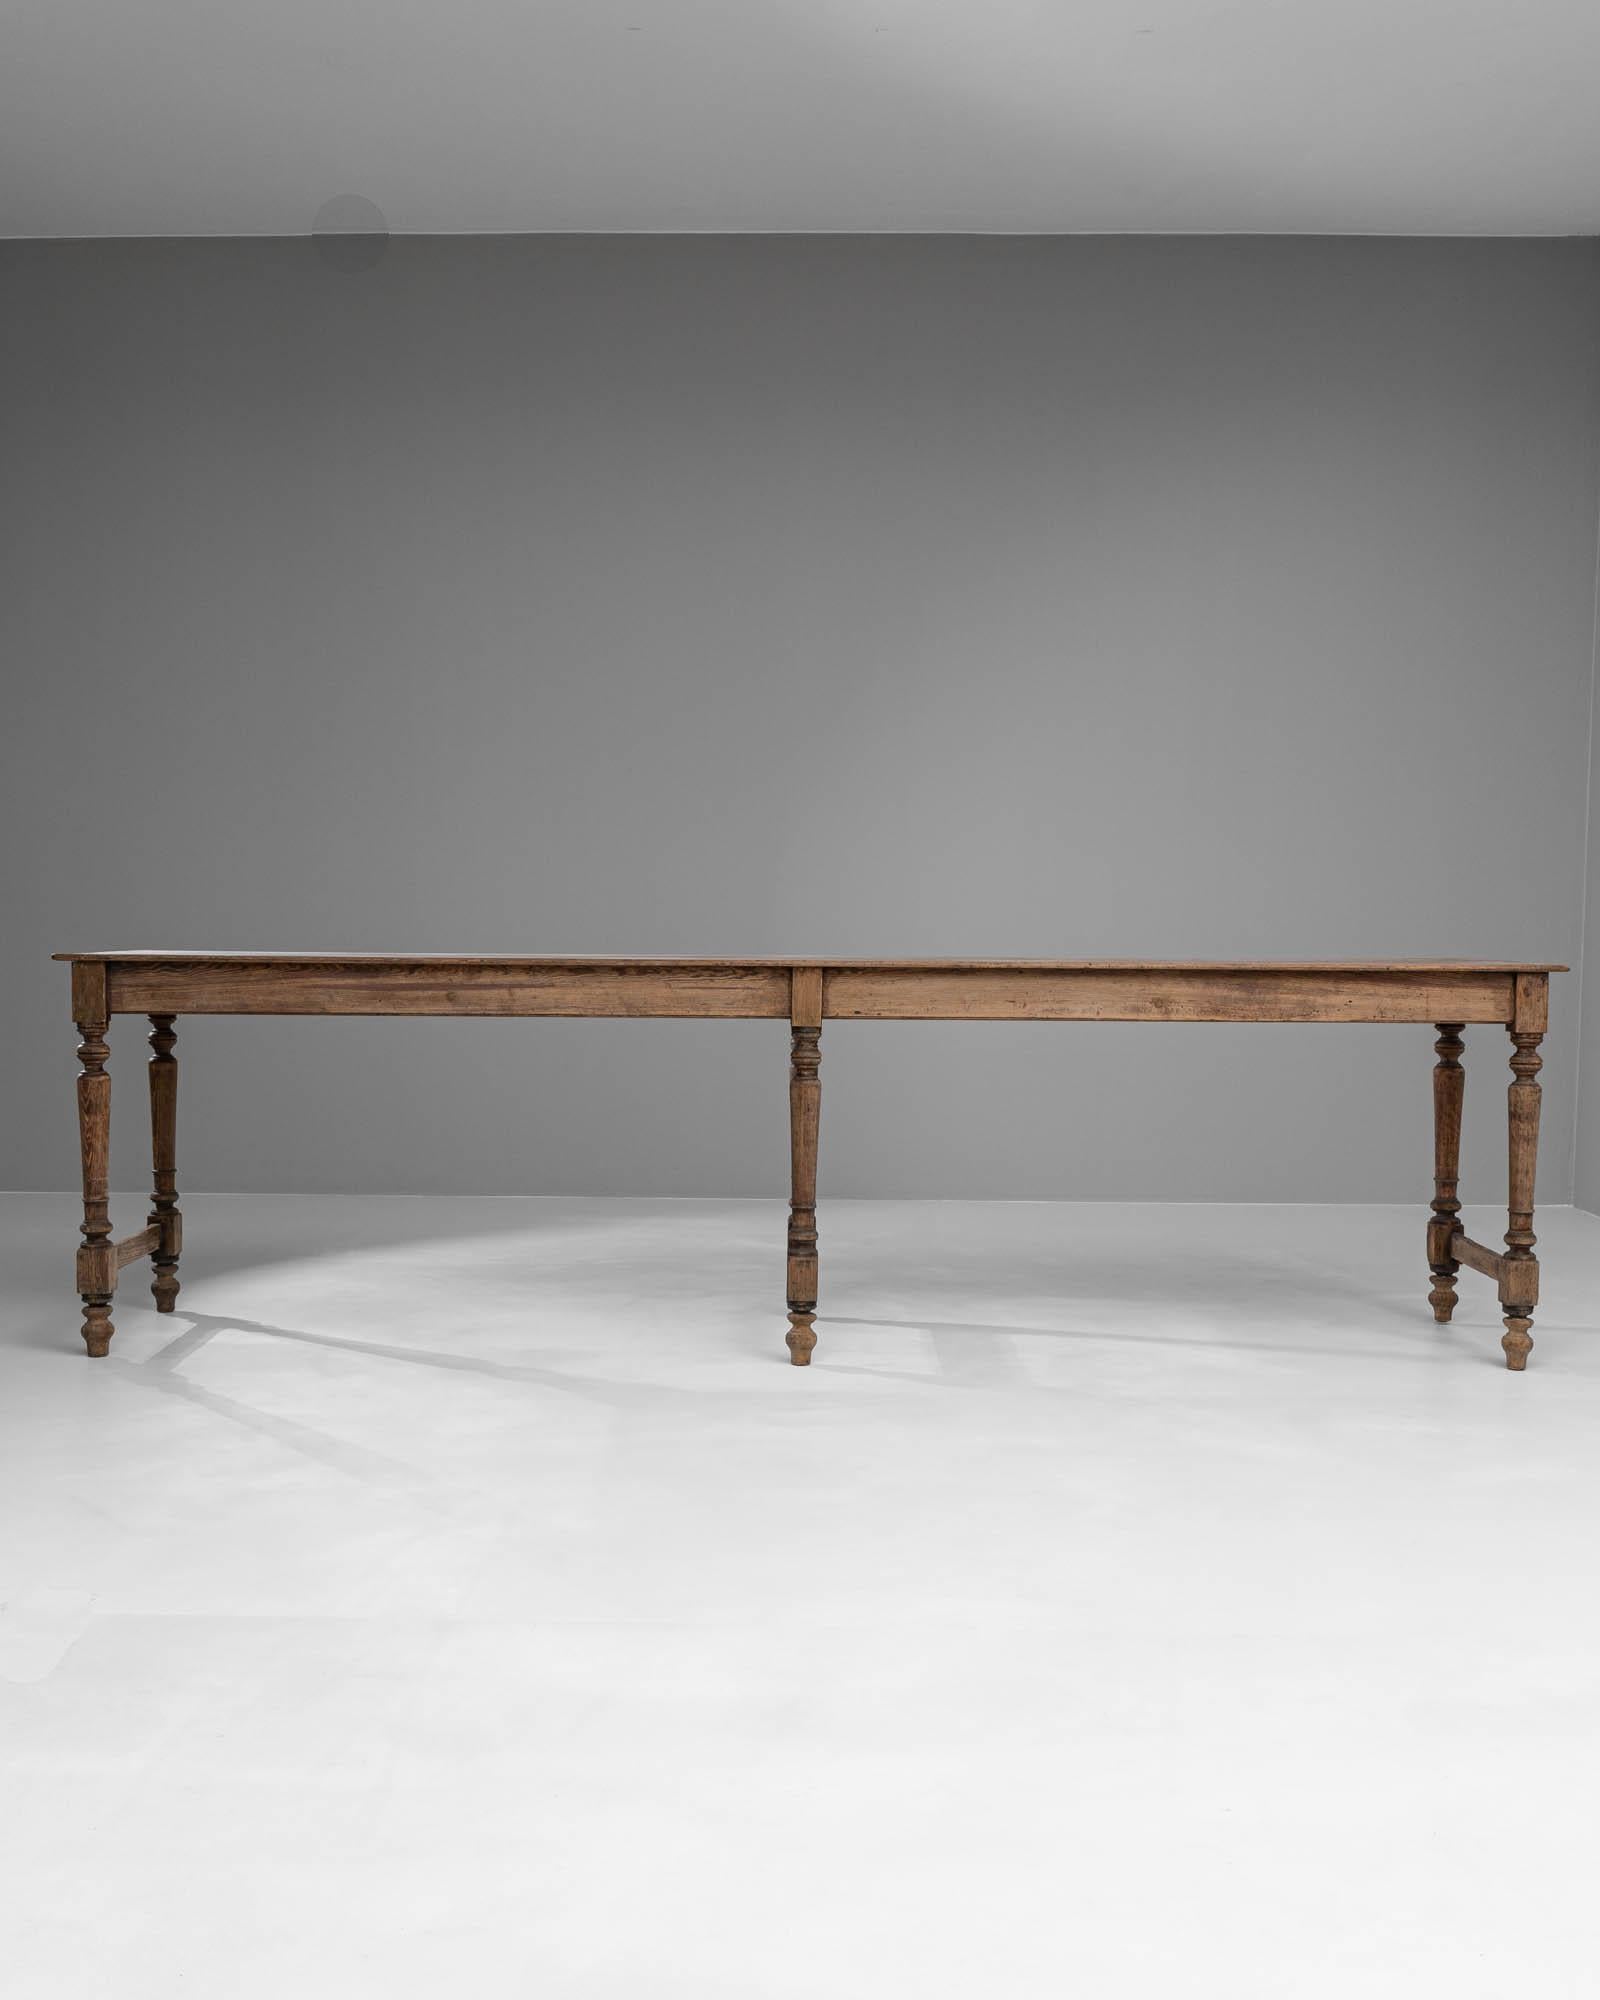 Dieser französische Holztisch aus dem 19. Jahrhundert strahlt die rustikale Eleganz vergangener Zeiten aus und versprüht historischen Charme. Der aus Massivholz gefertigte Tisch wird von fein gedrechselten Beinen getragen, die durch eine robuste,